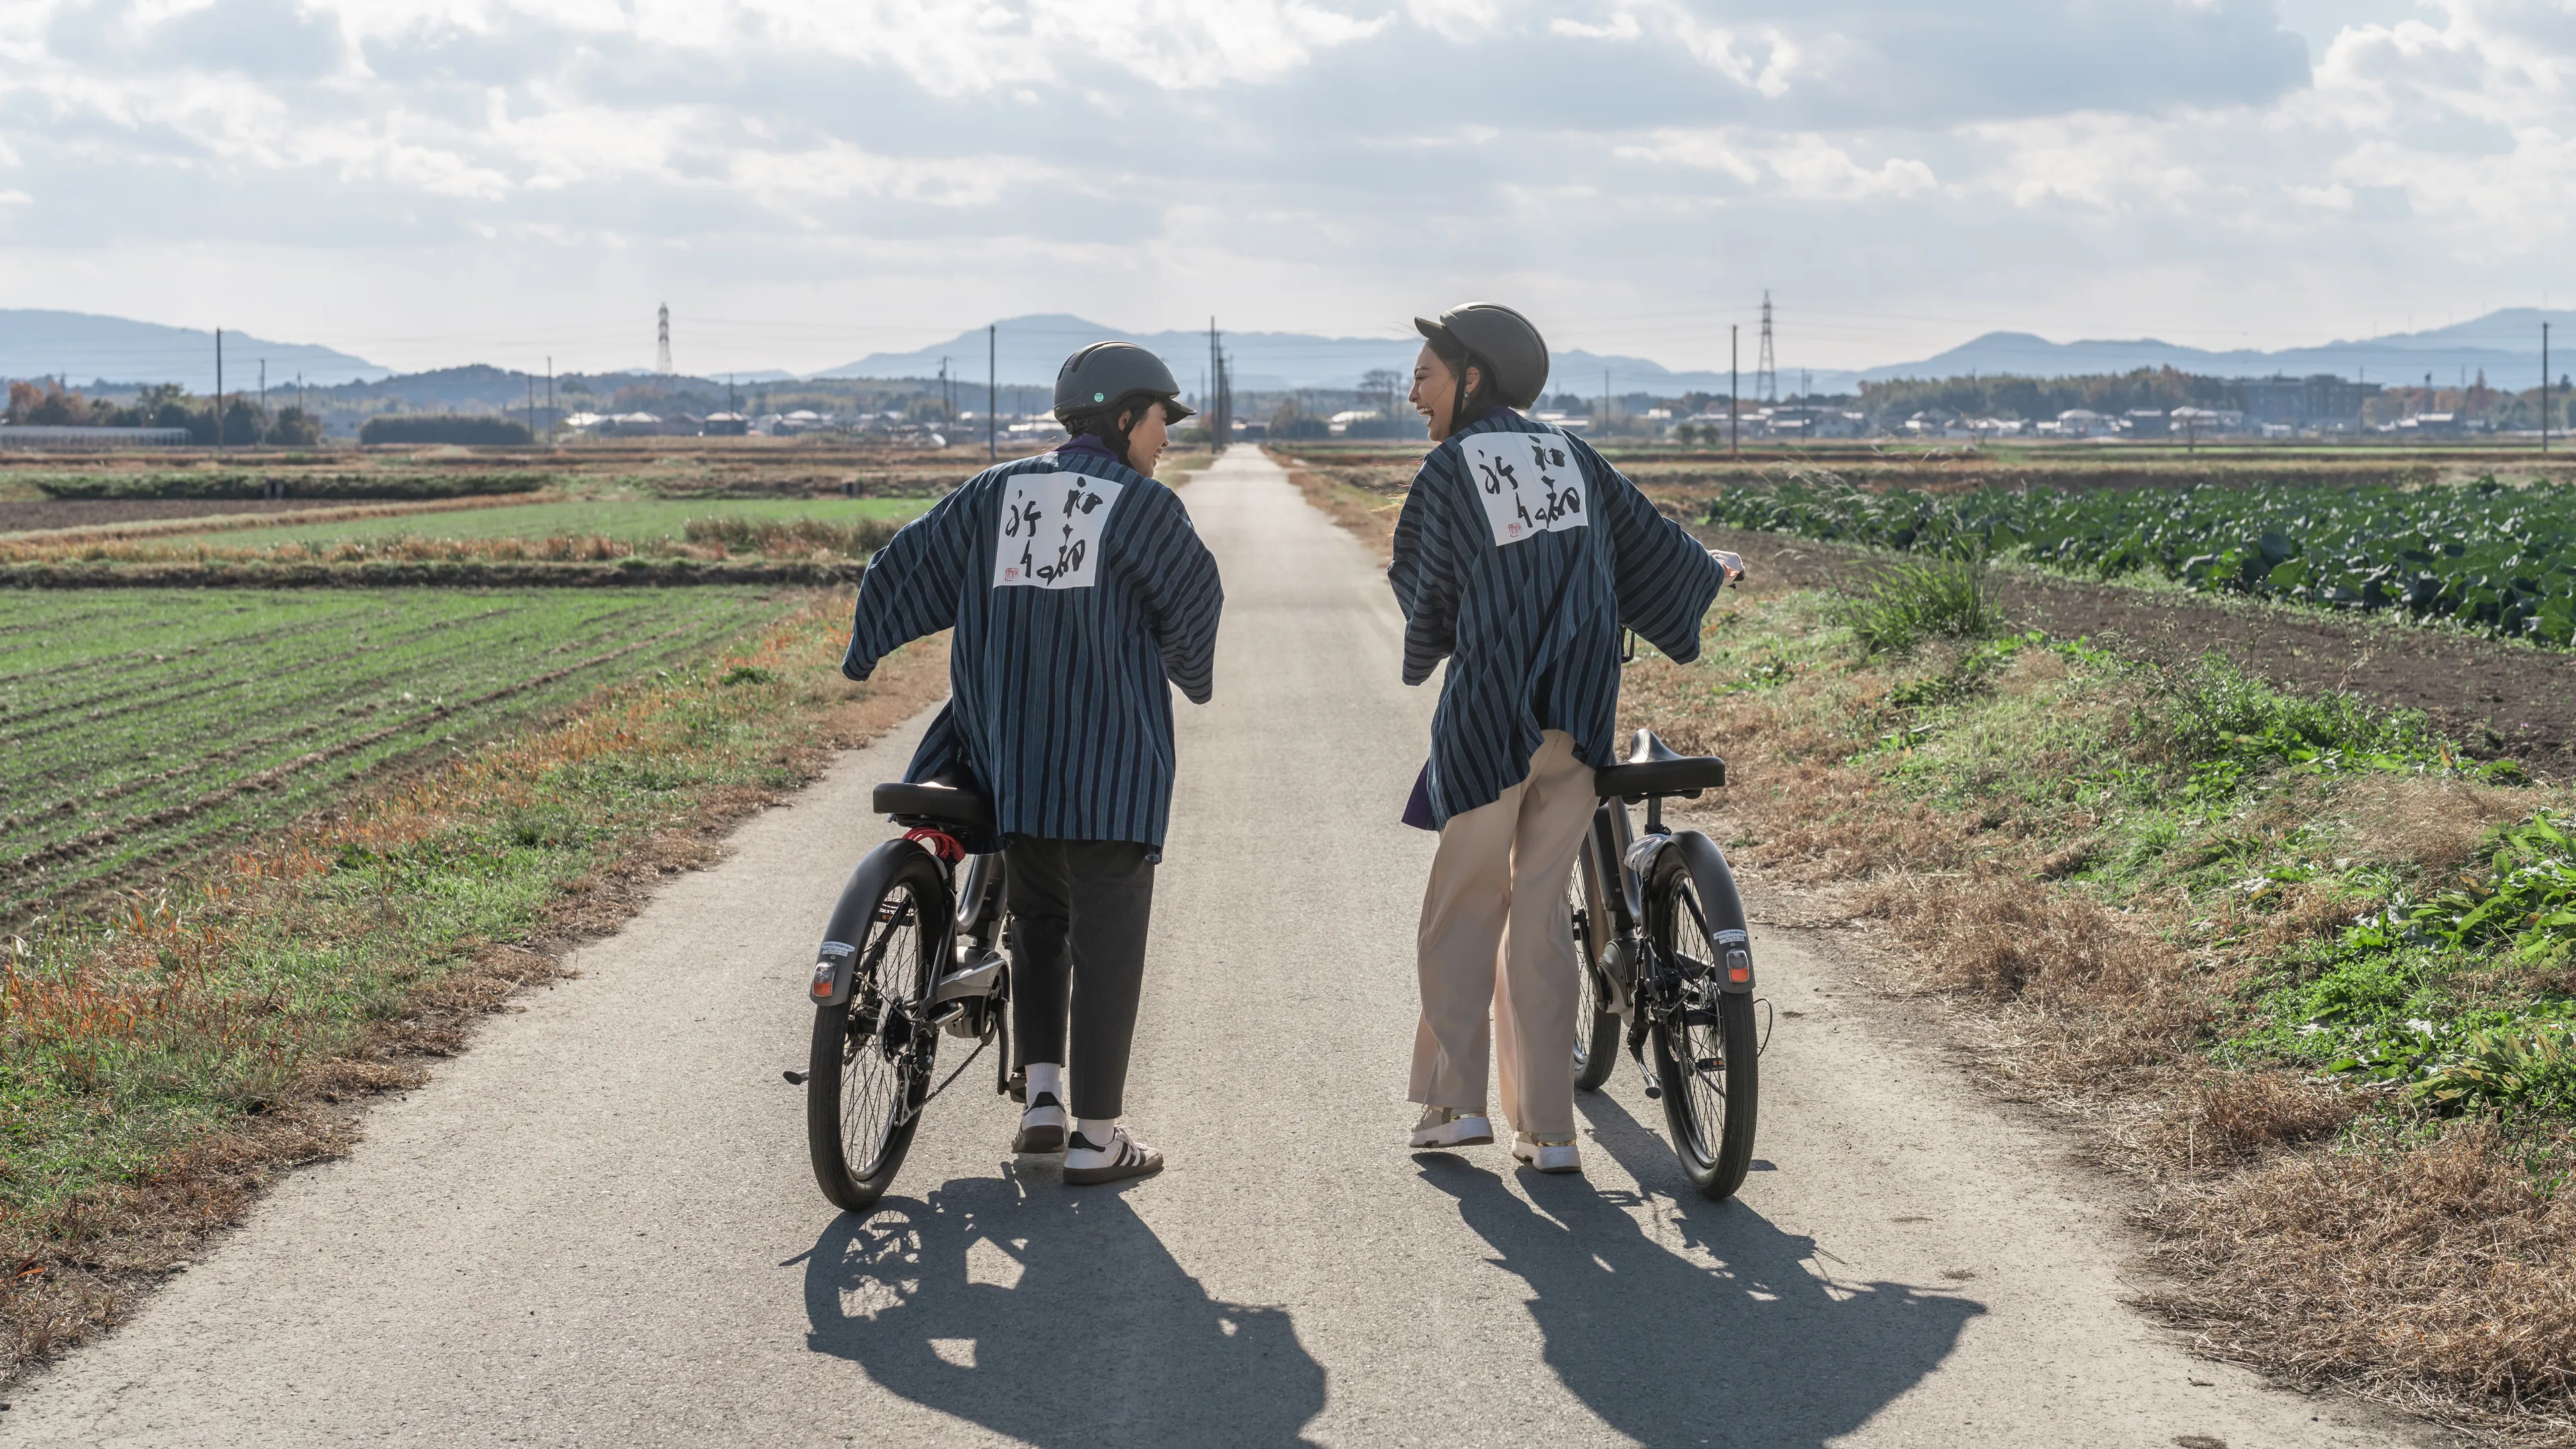 สำรวจความมหัศจรรย์ของสาเกญี่ปุ่นไปกับทัวร์ปั่นจักรยานที่เมืองเมวะ